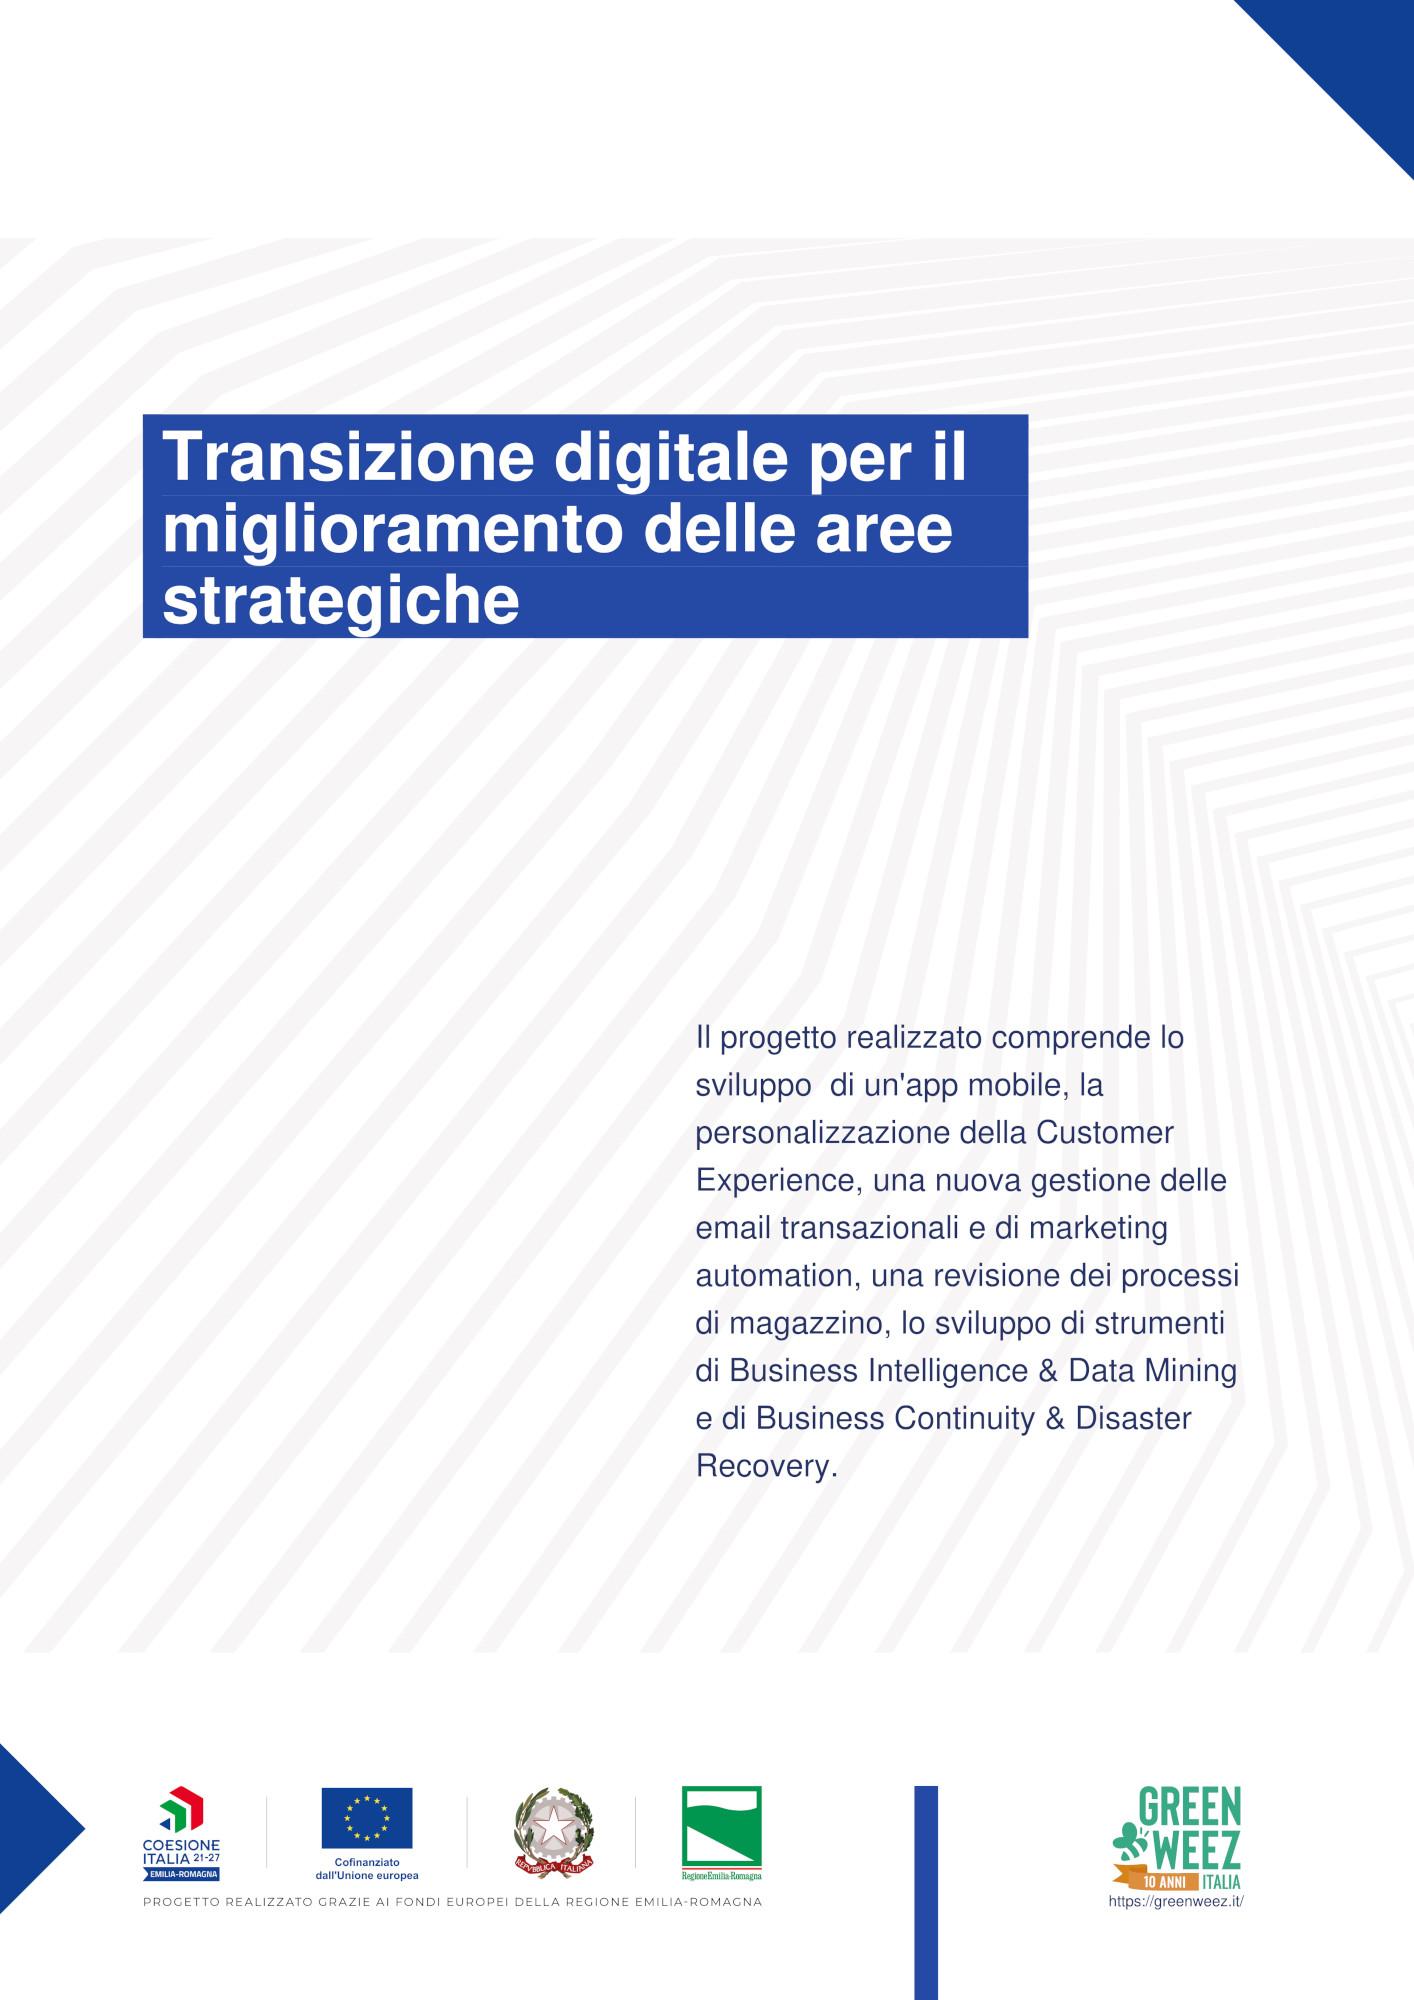 Transazione digitale per il miglioramento delle aree strategiche